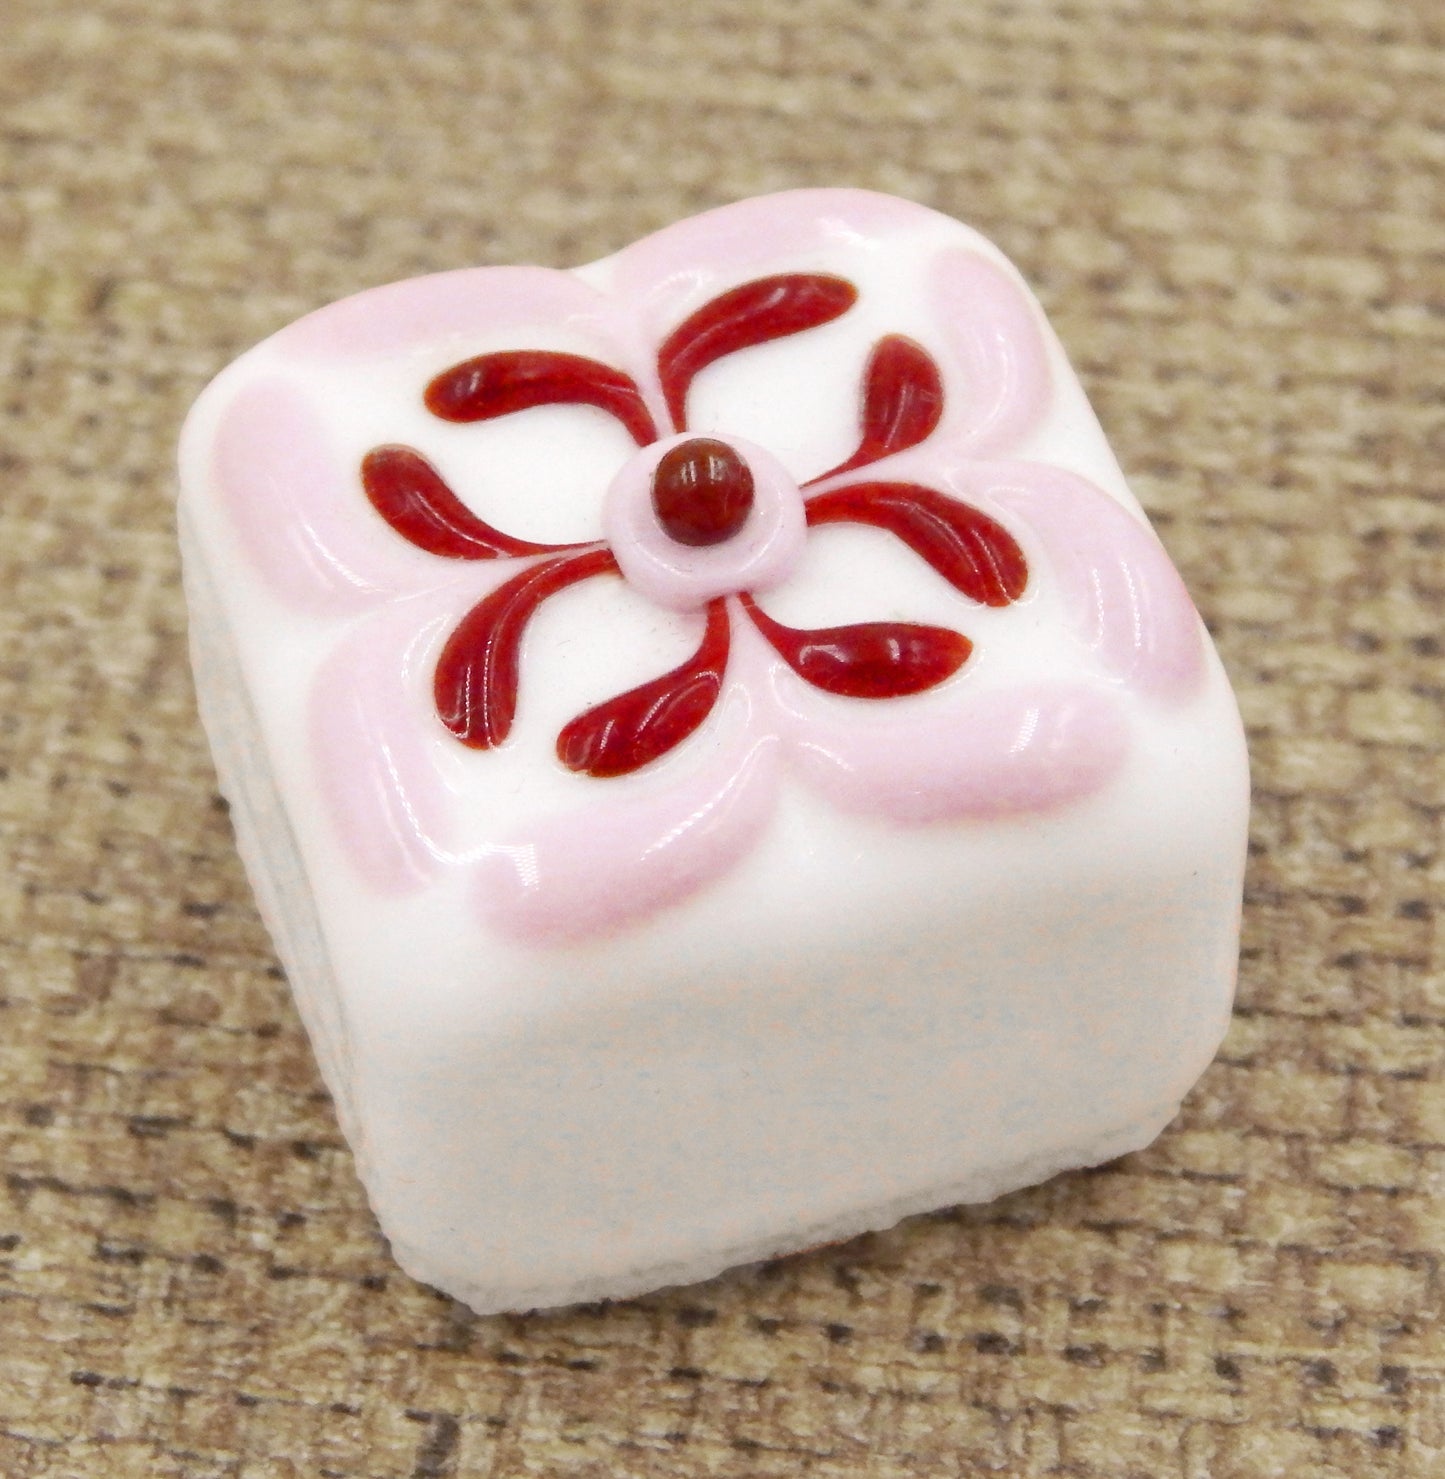 White Chocolate Treat with Strawberry & Cherry Design (18-060WSH)